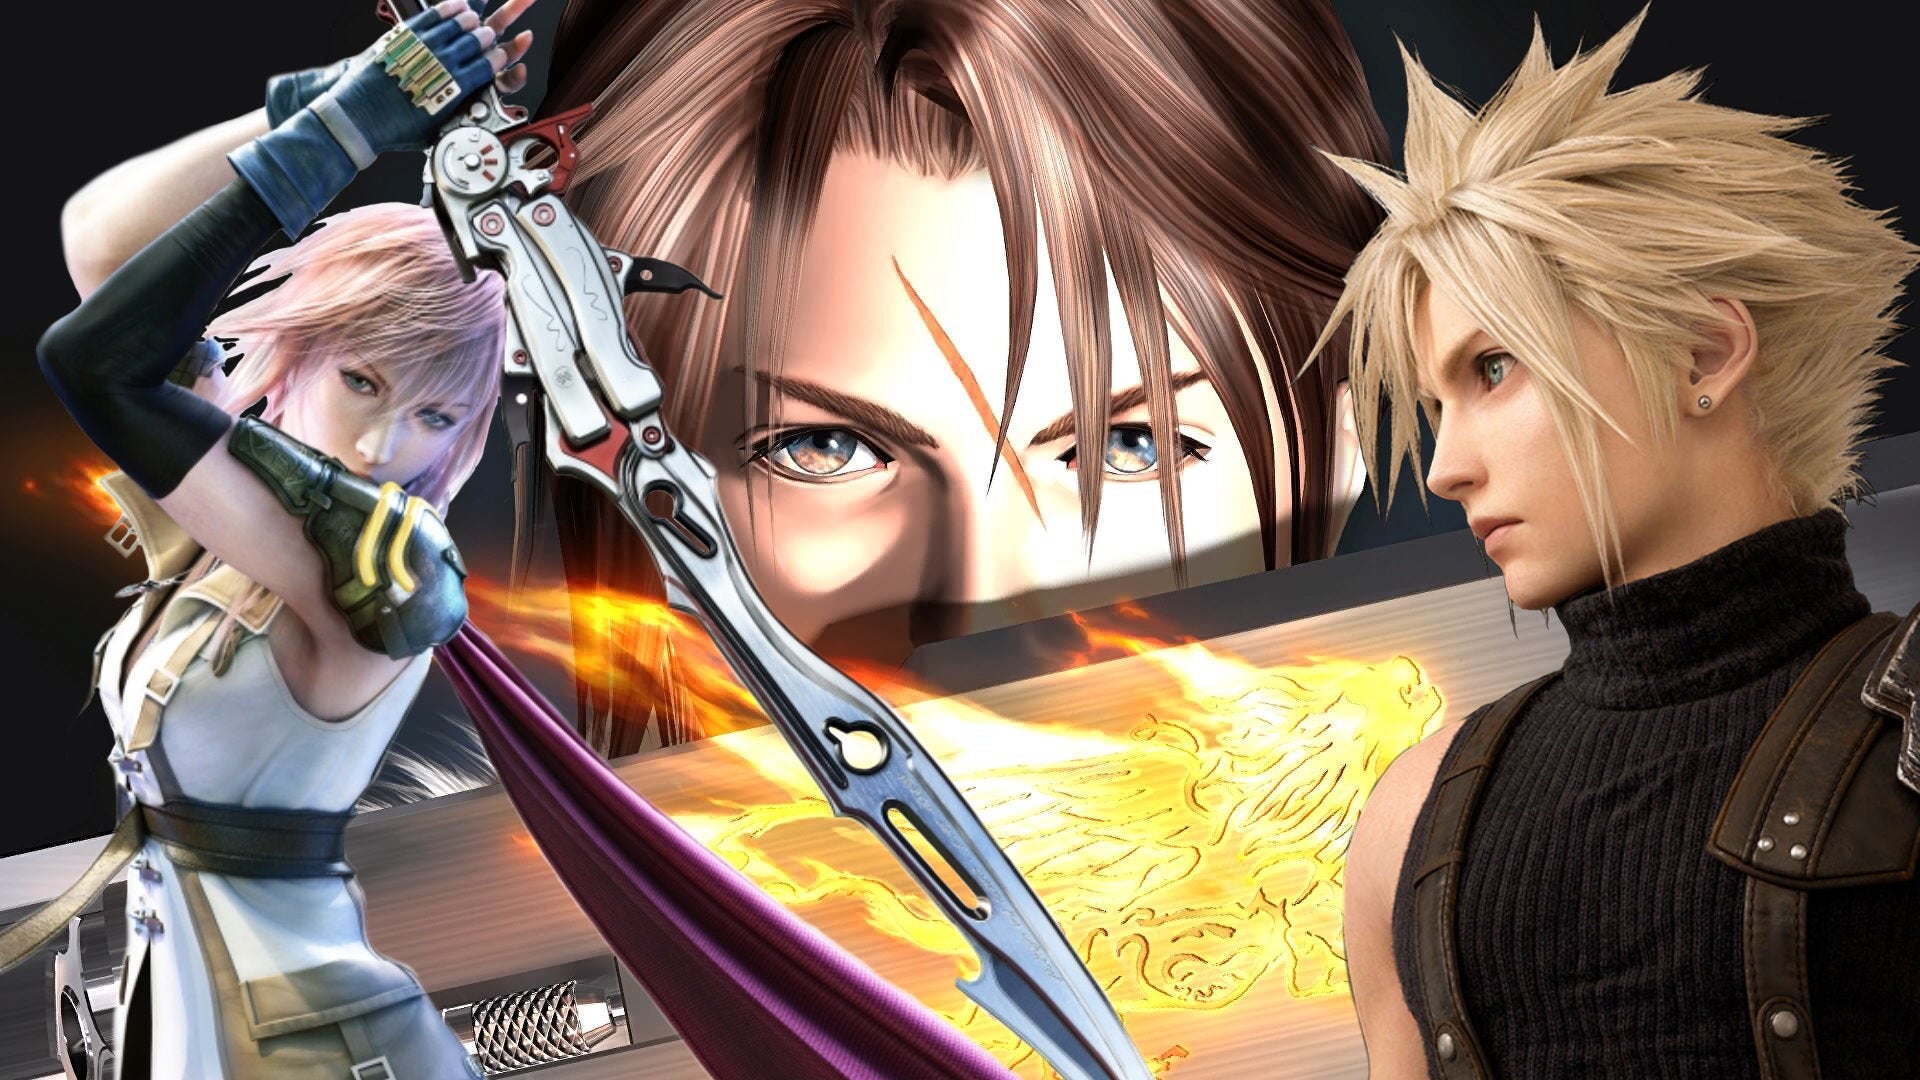 klæde sig ud dash session The 10 best Final Fantasy games on PC | Rock Paper Shotgun